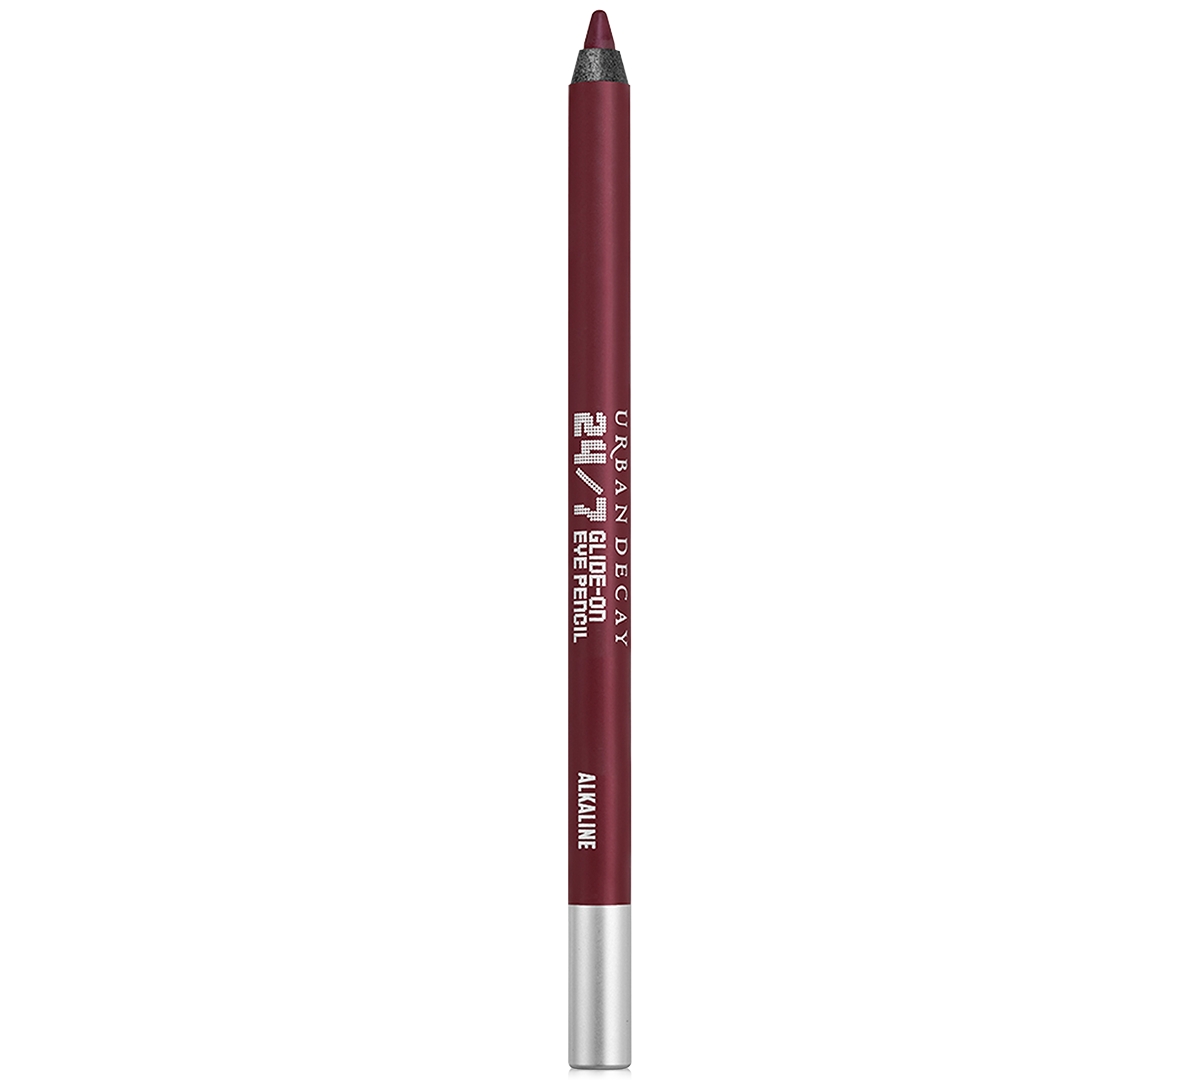 Urban Decay 24/7 Glide-on Waterproof Eyeliner Pencil In Alkaline (dark Reddish-brown Metallic)